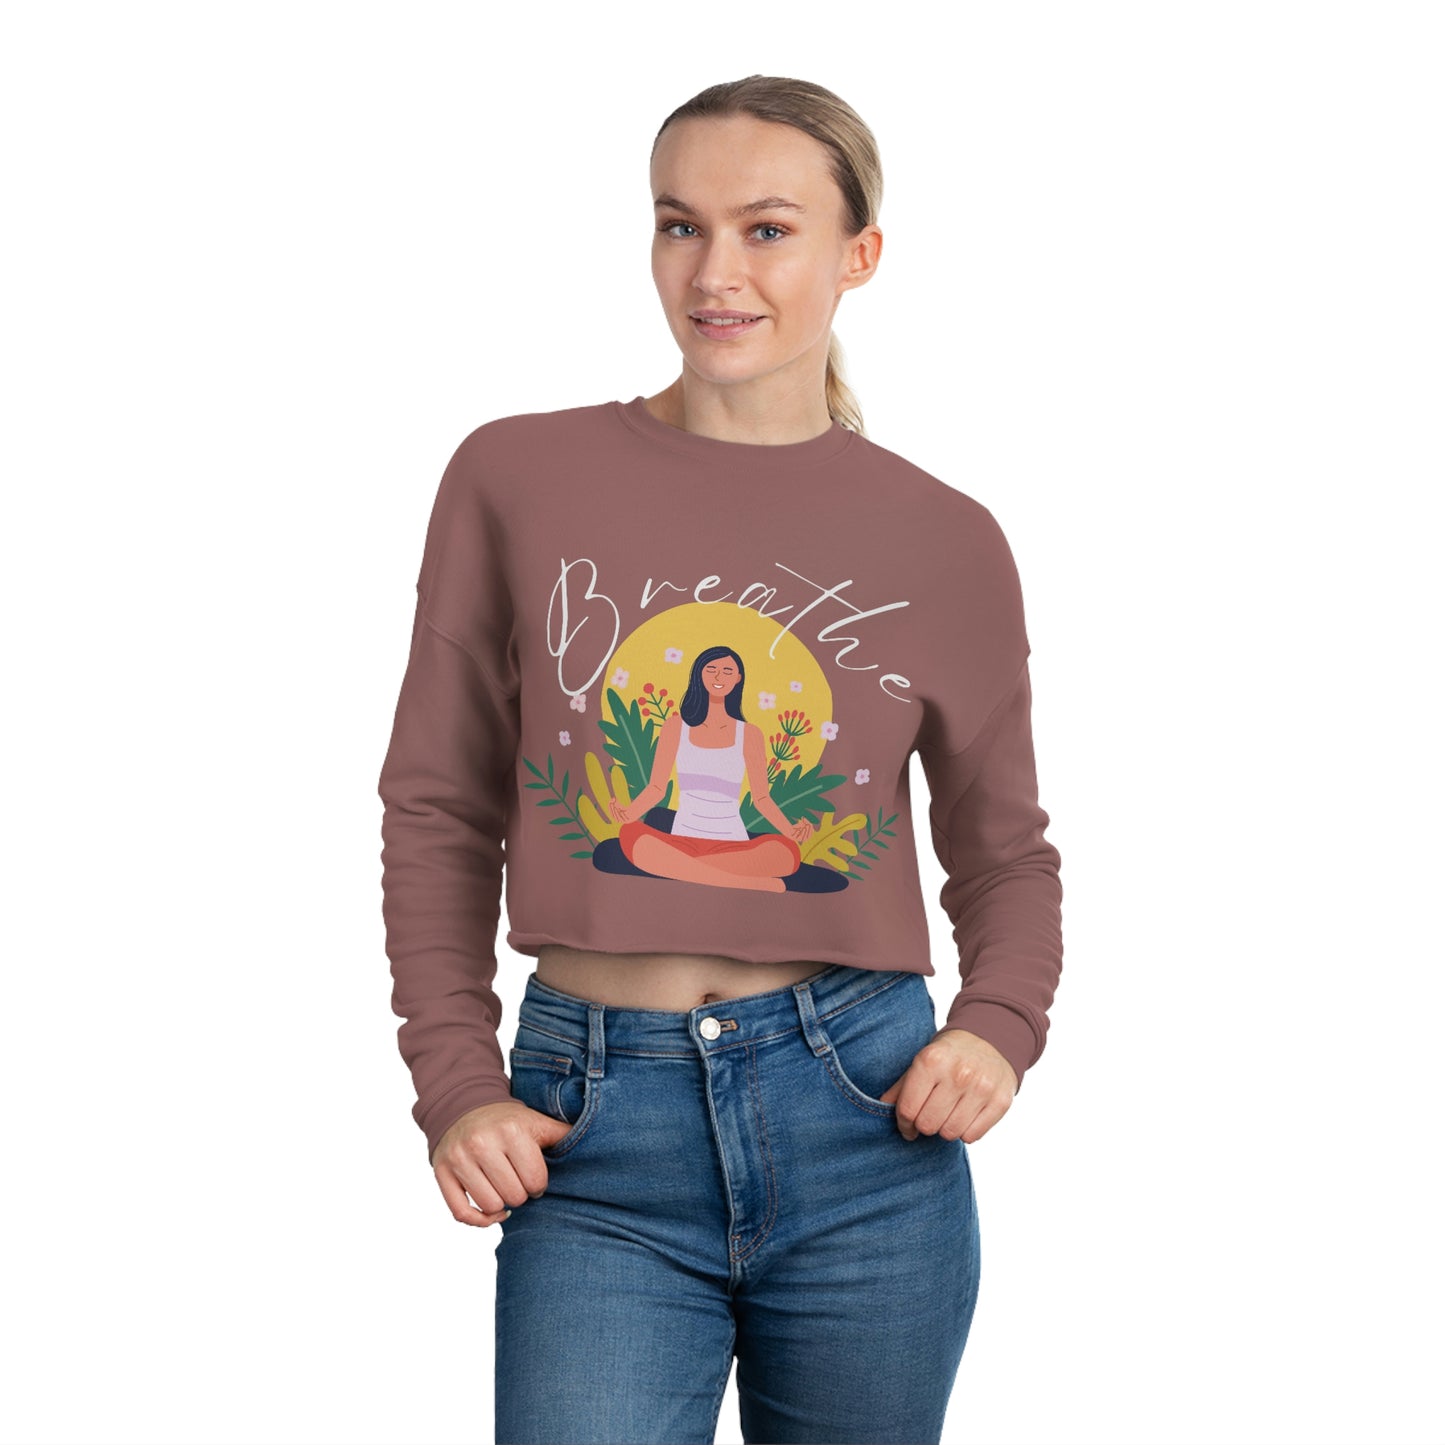 Breathe Women's Cropped Sweatshirt